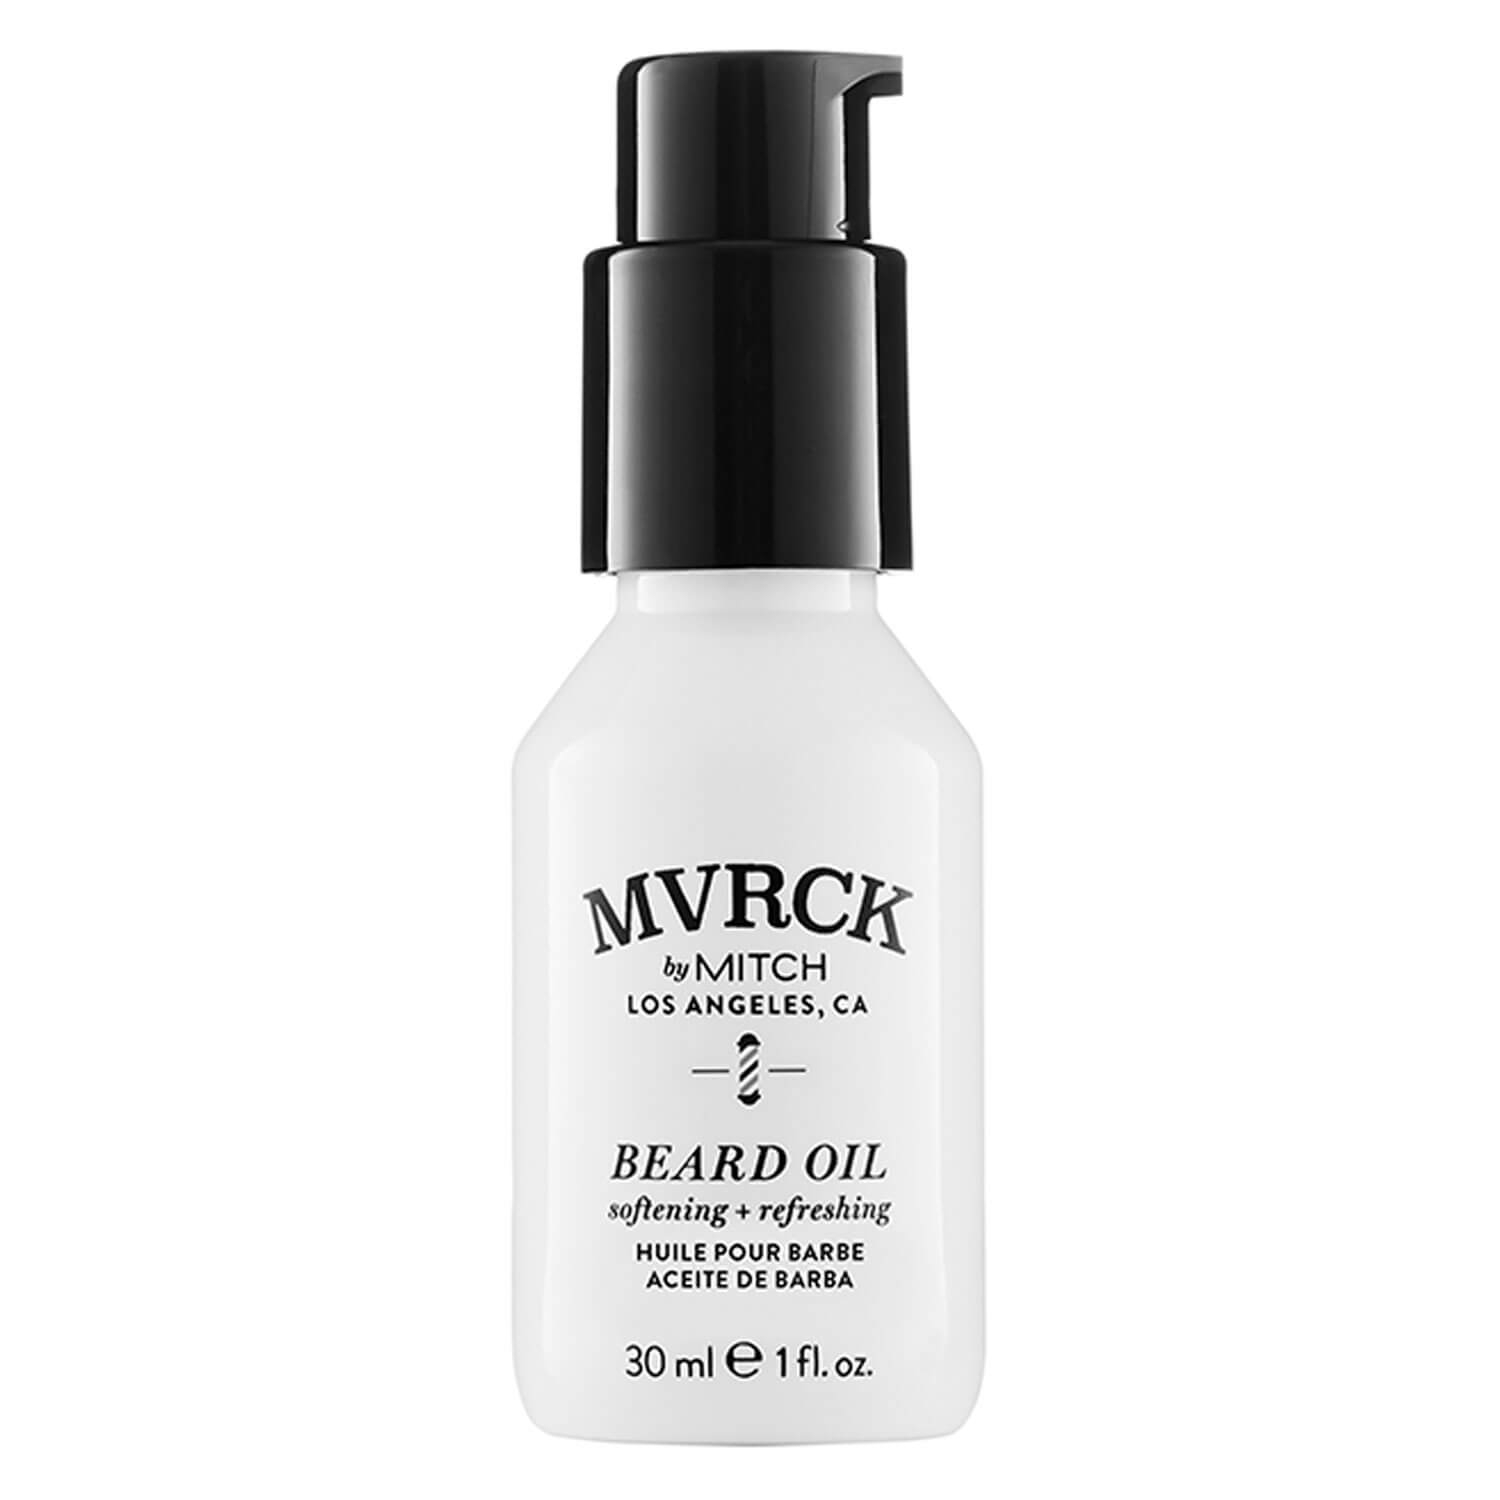 Produktbild von MVRCK - Beard Oil